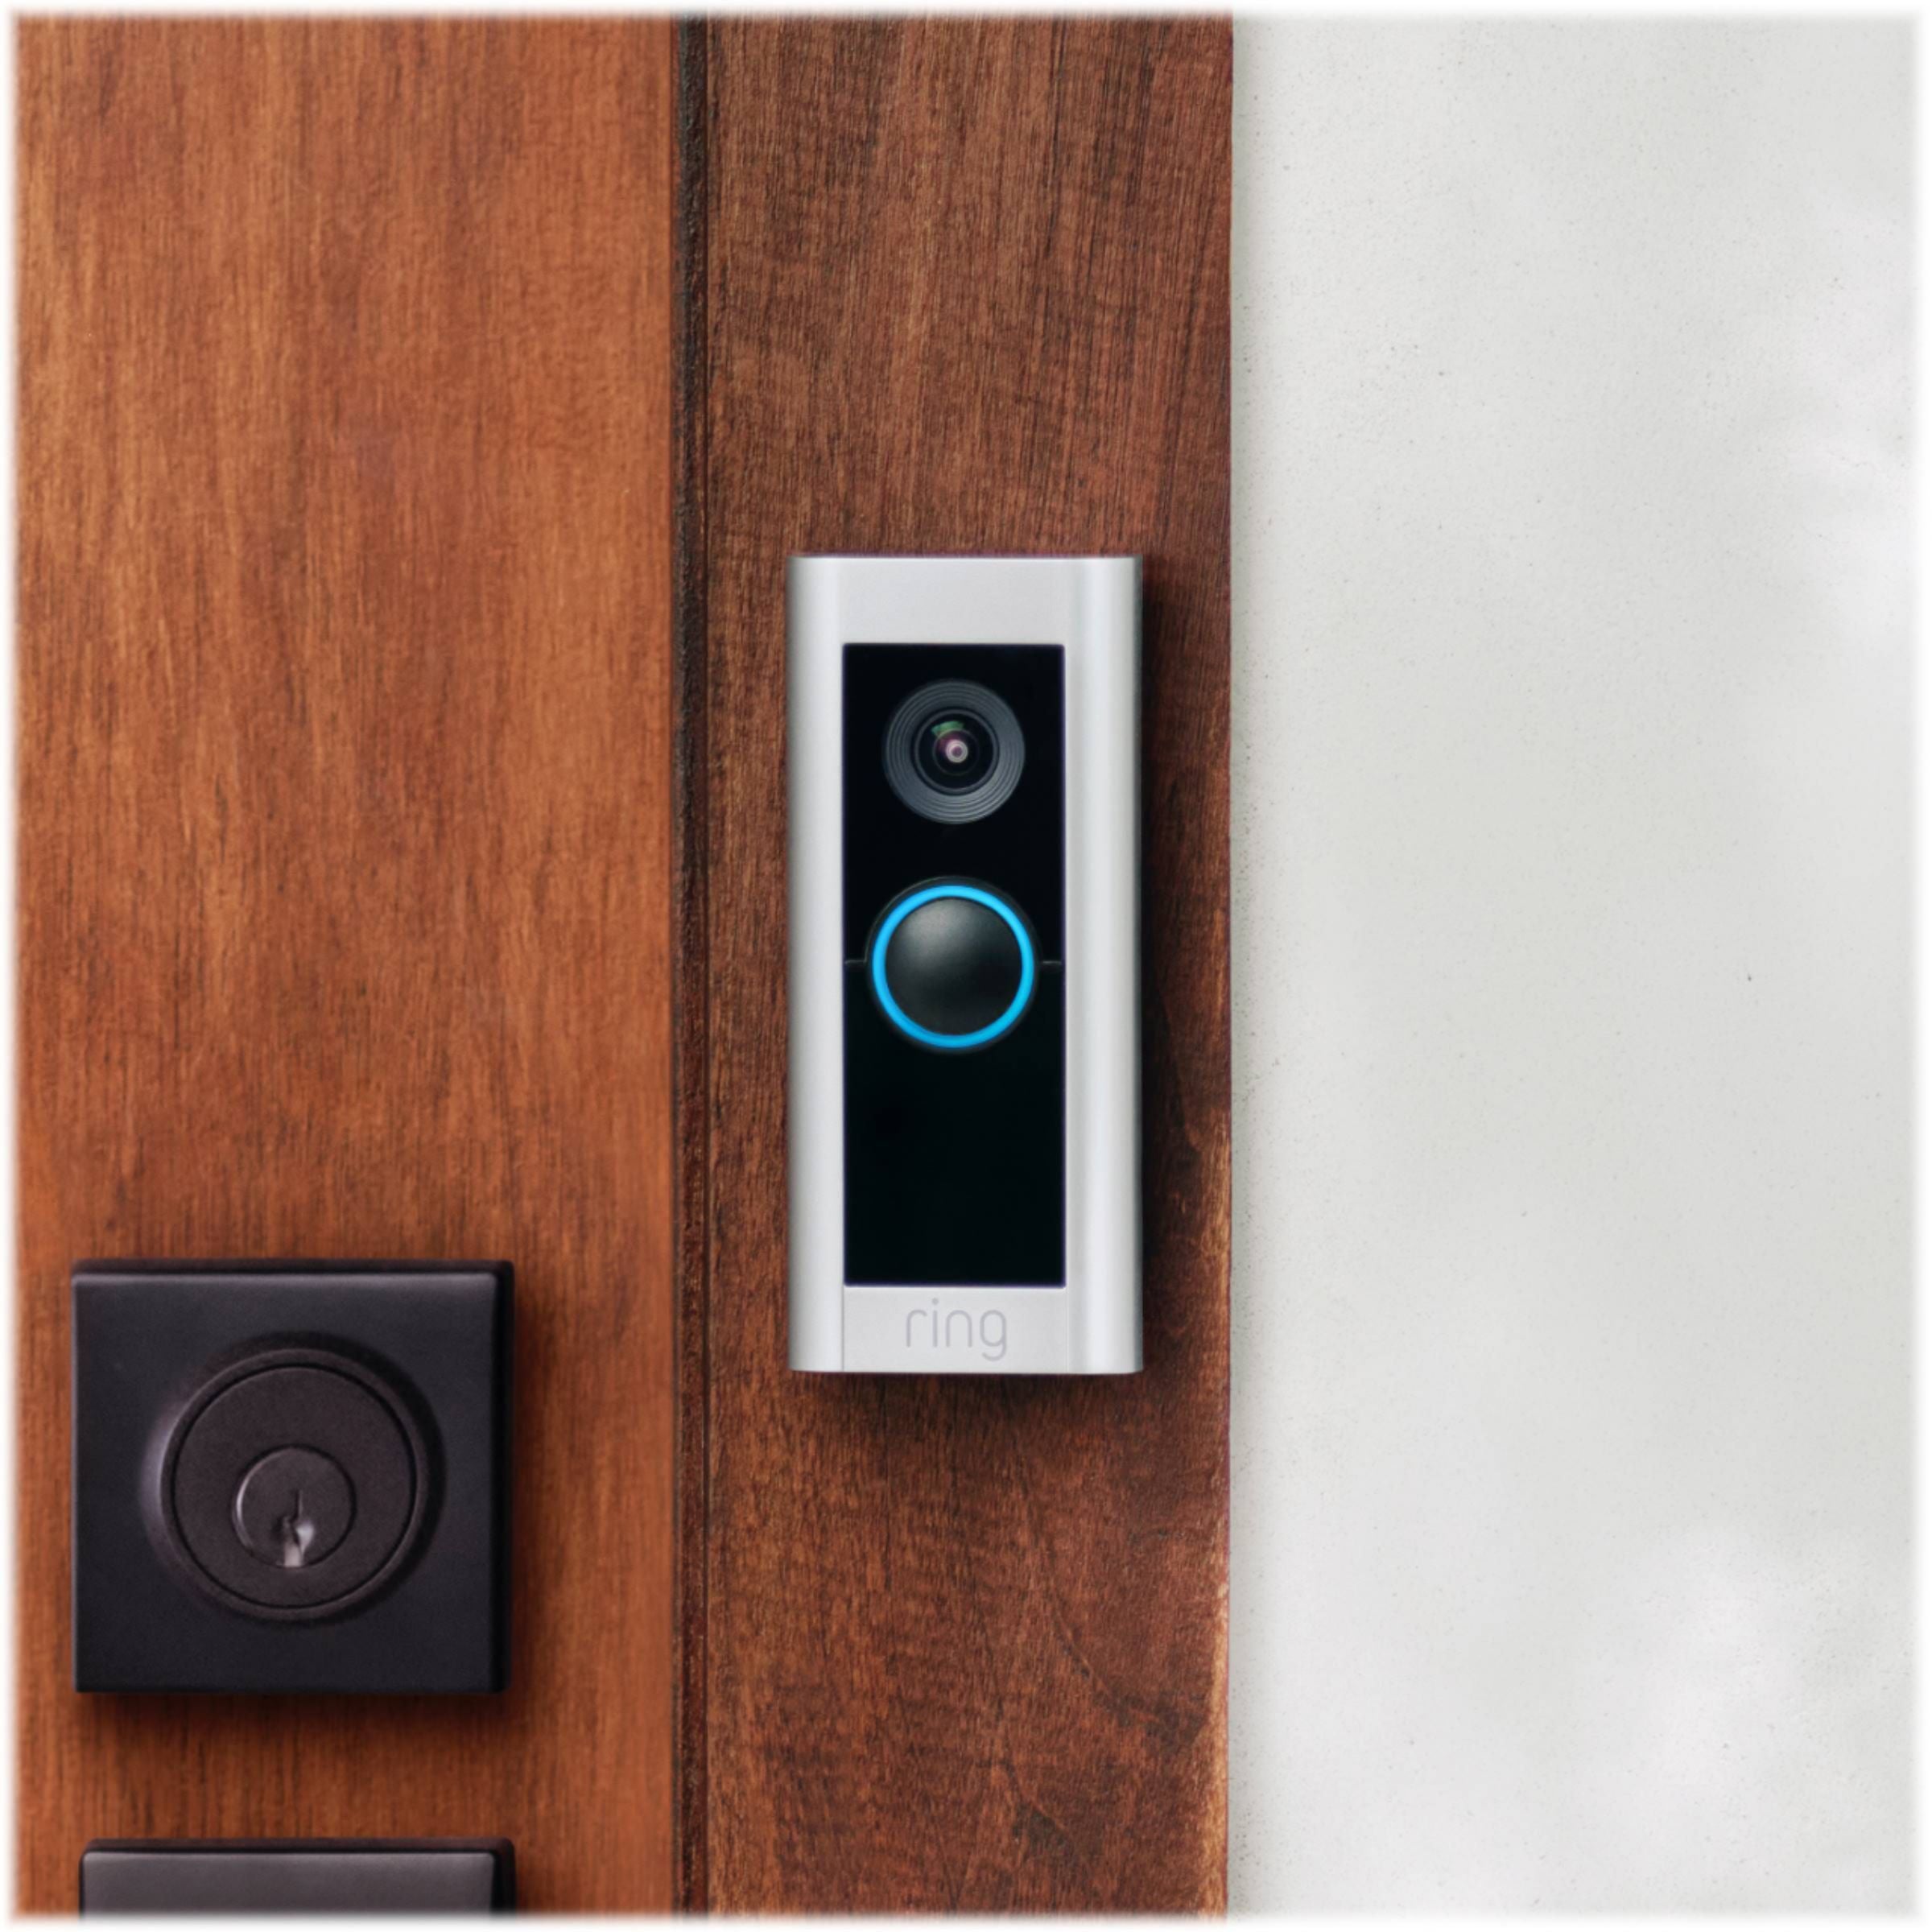 Ring Video Doorbell Pro 2 Smart WiFi Video Doorbell Wired - Satin Nickel - Pro-Distributing